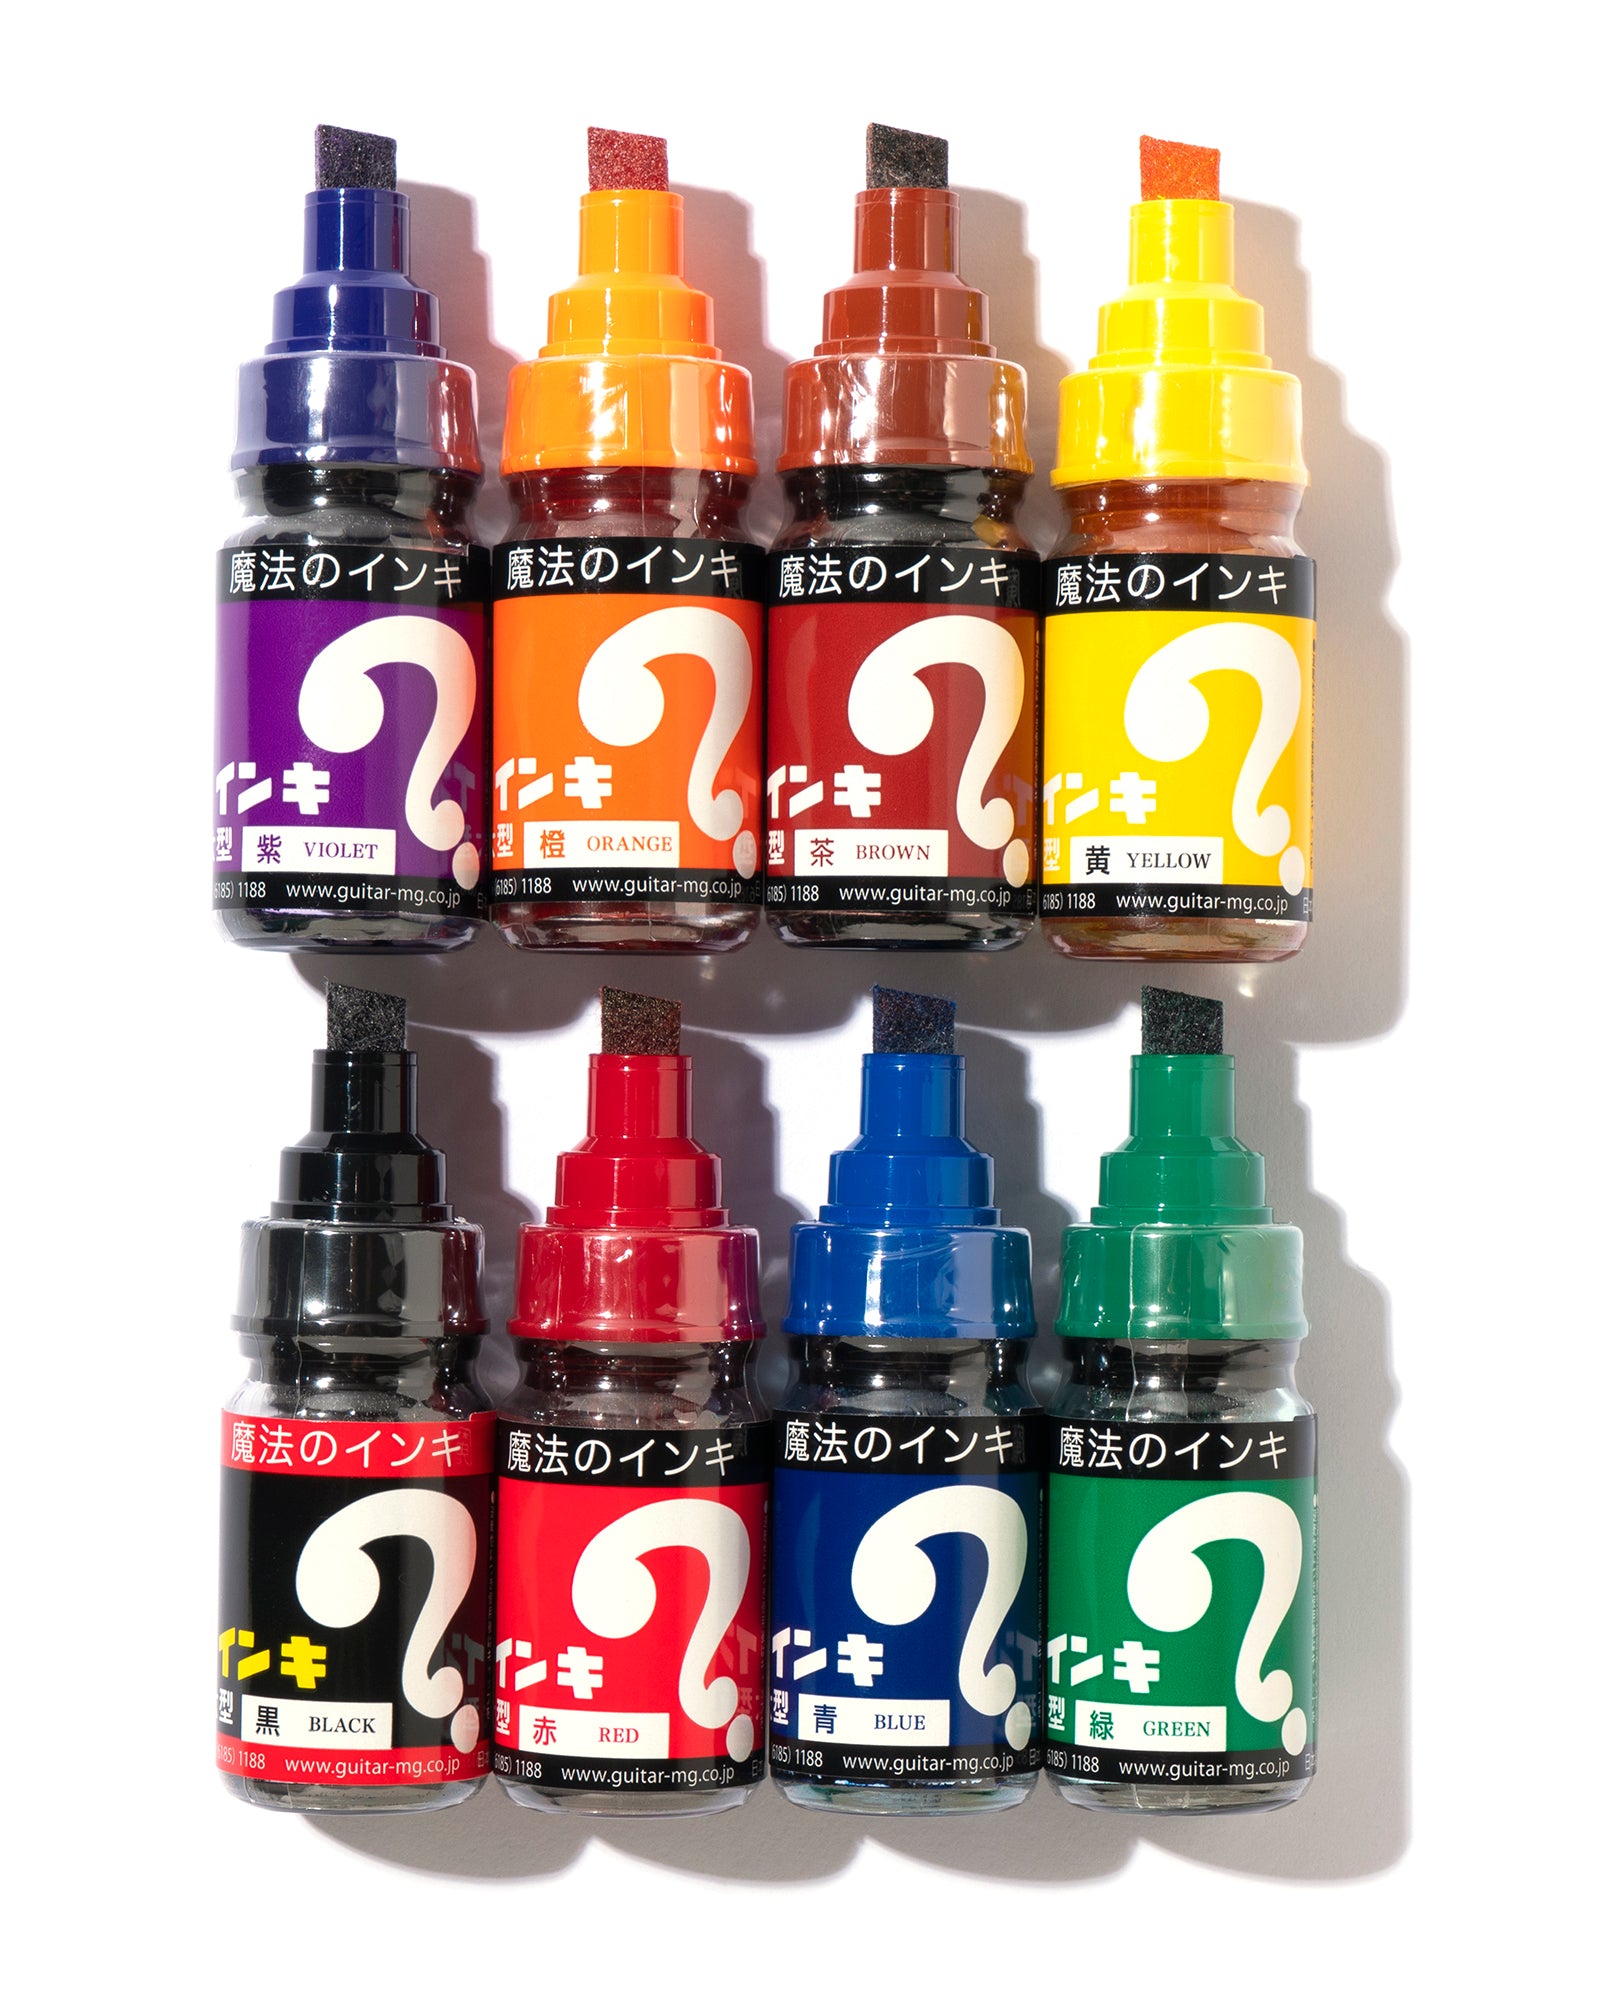 Magic Ink 8 Color Set